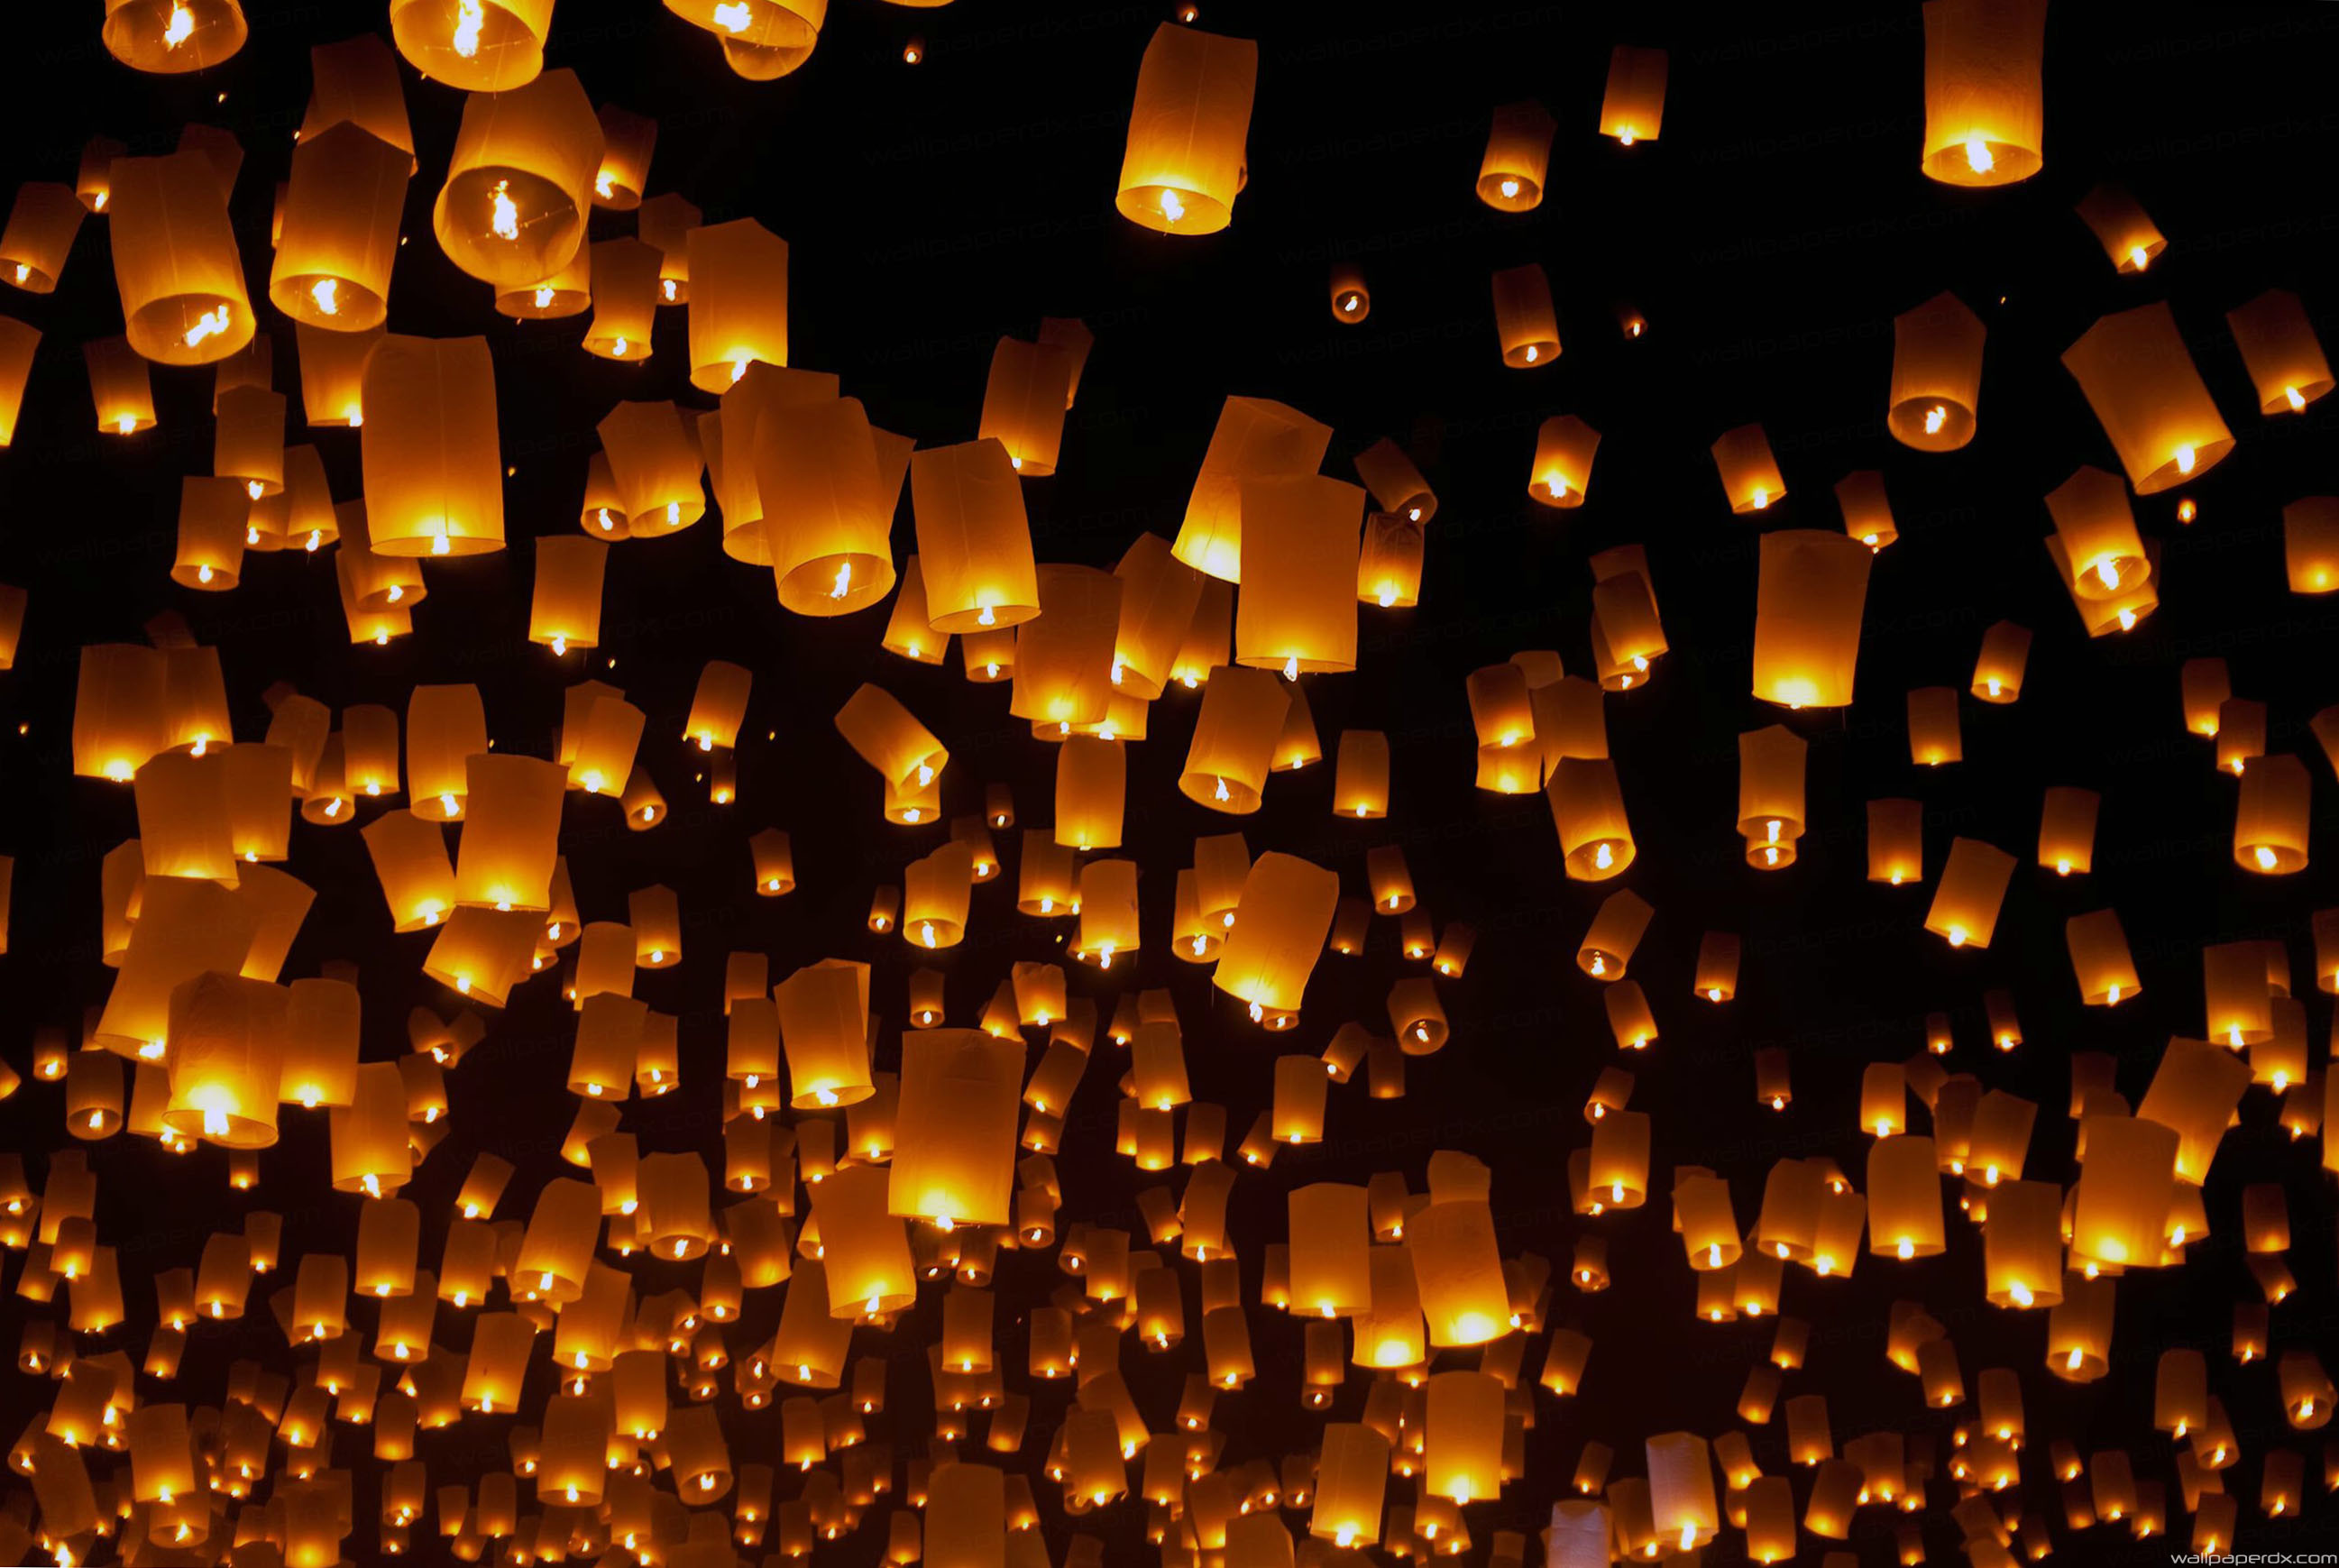 chinese lantern wallpaper,lighting,lantern,light,yellow,candle